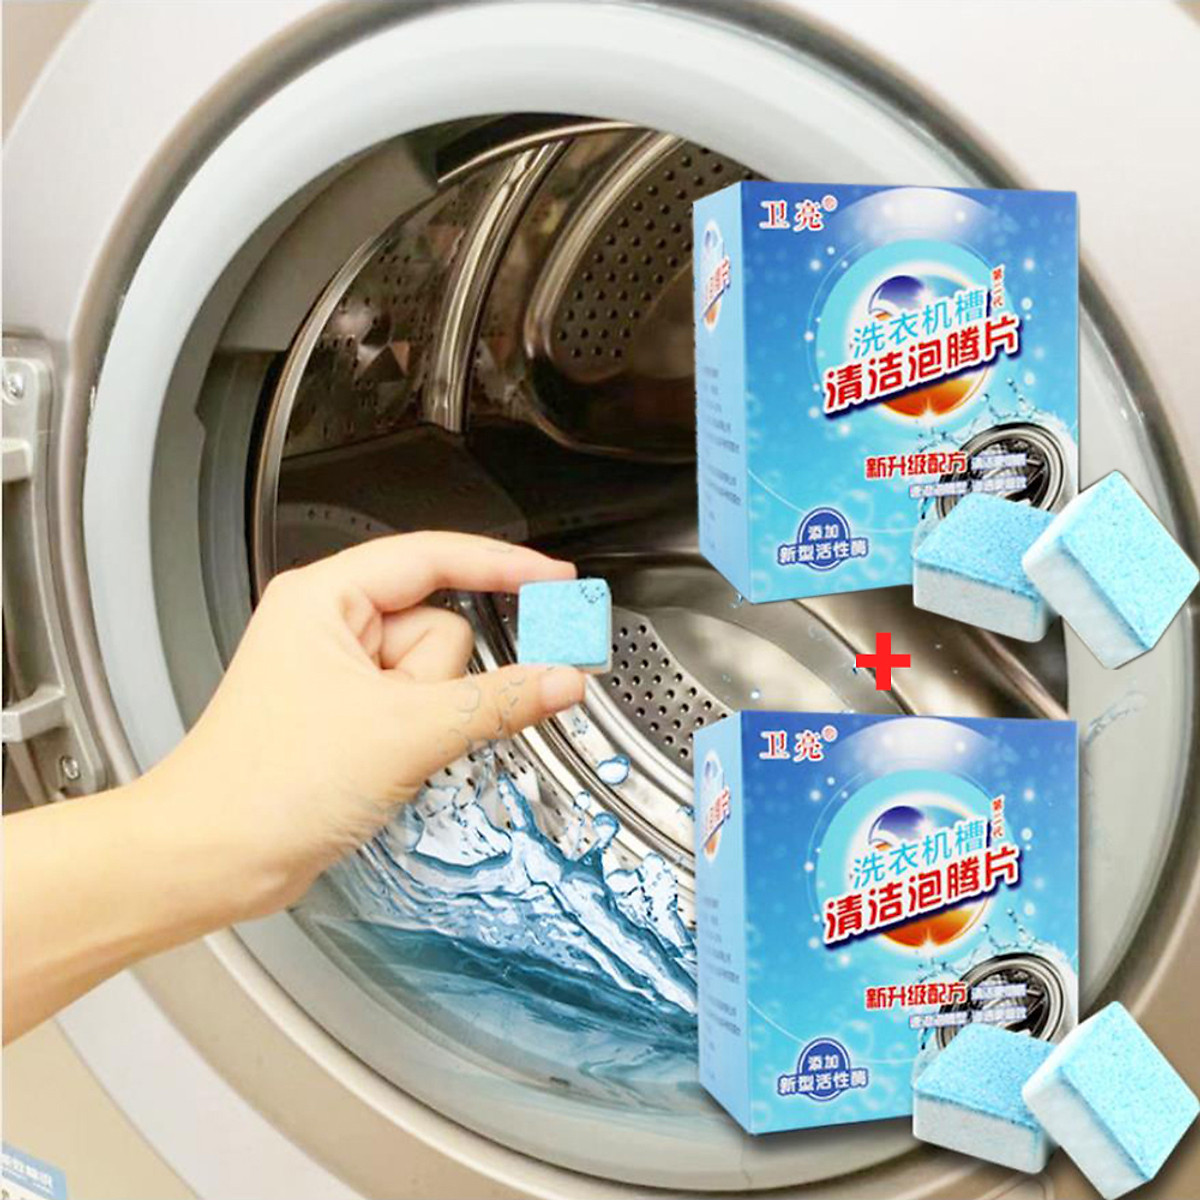 Viên tẩy lồng giặt công nghệ mới diệt khuẩn 99% và tẩy sạch cặn máy giặt